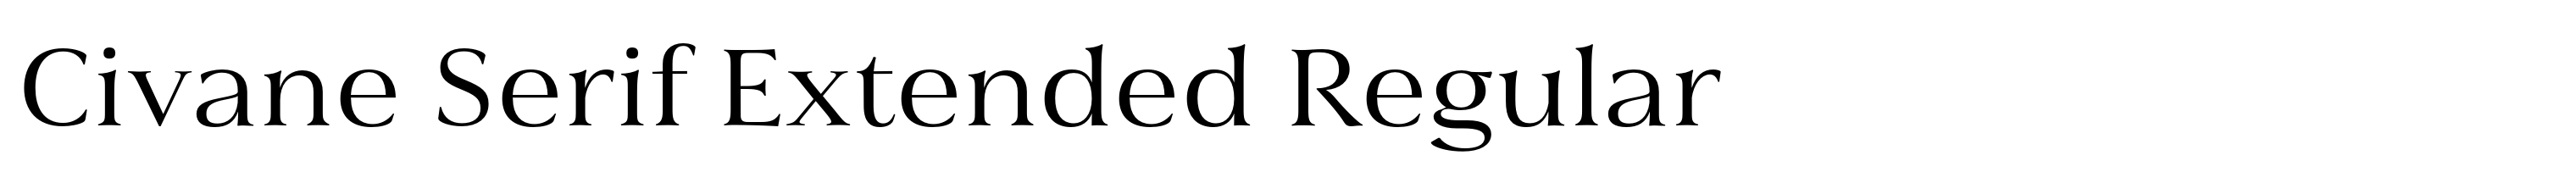 Civane Serif Extended Regular